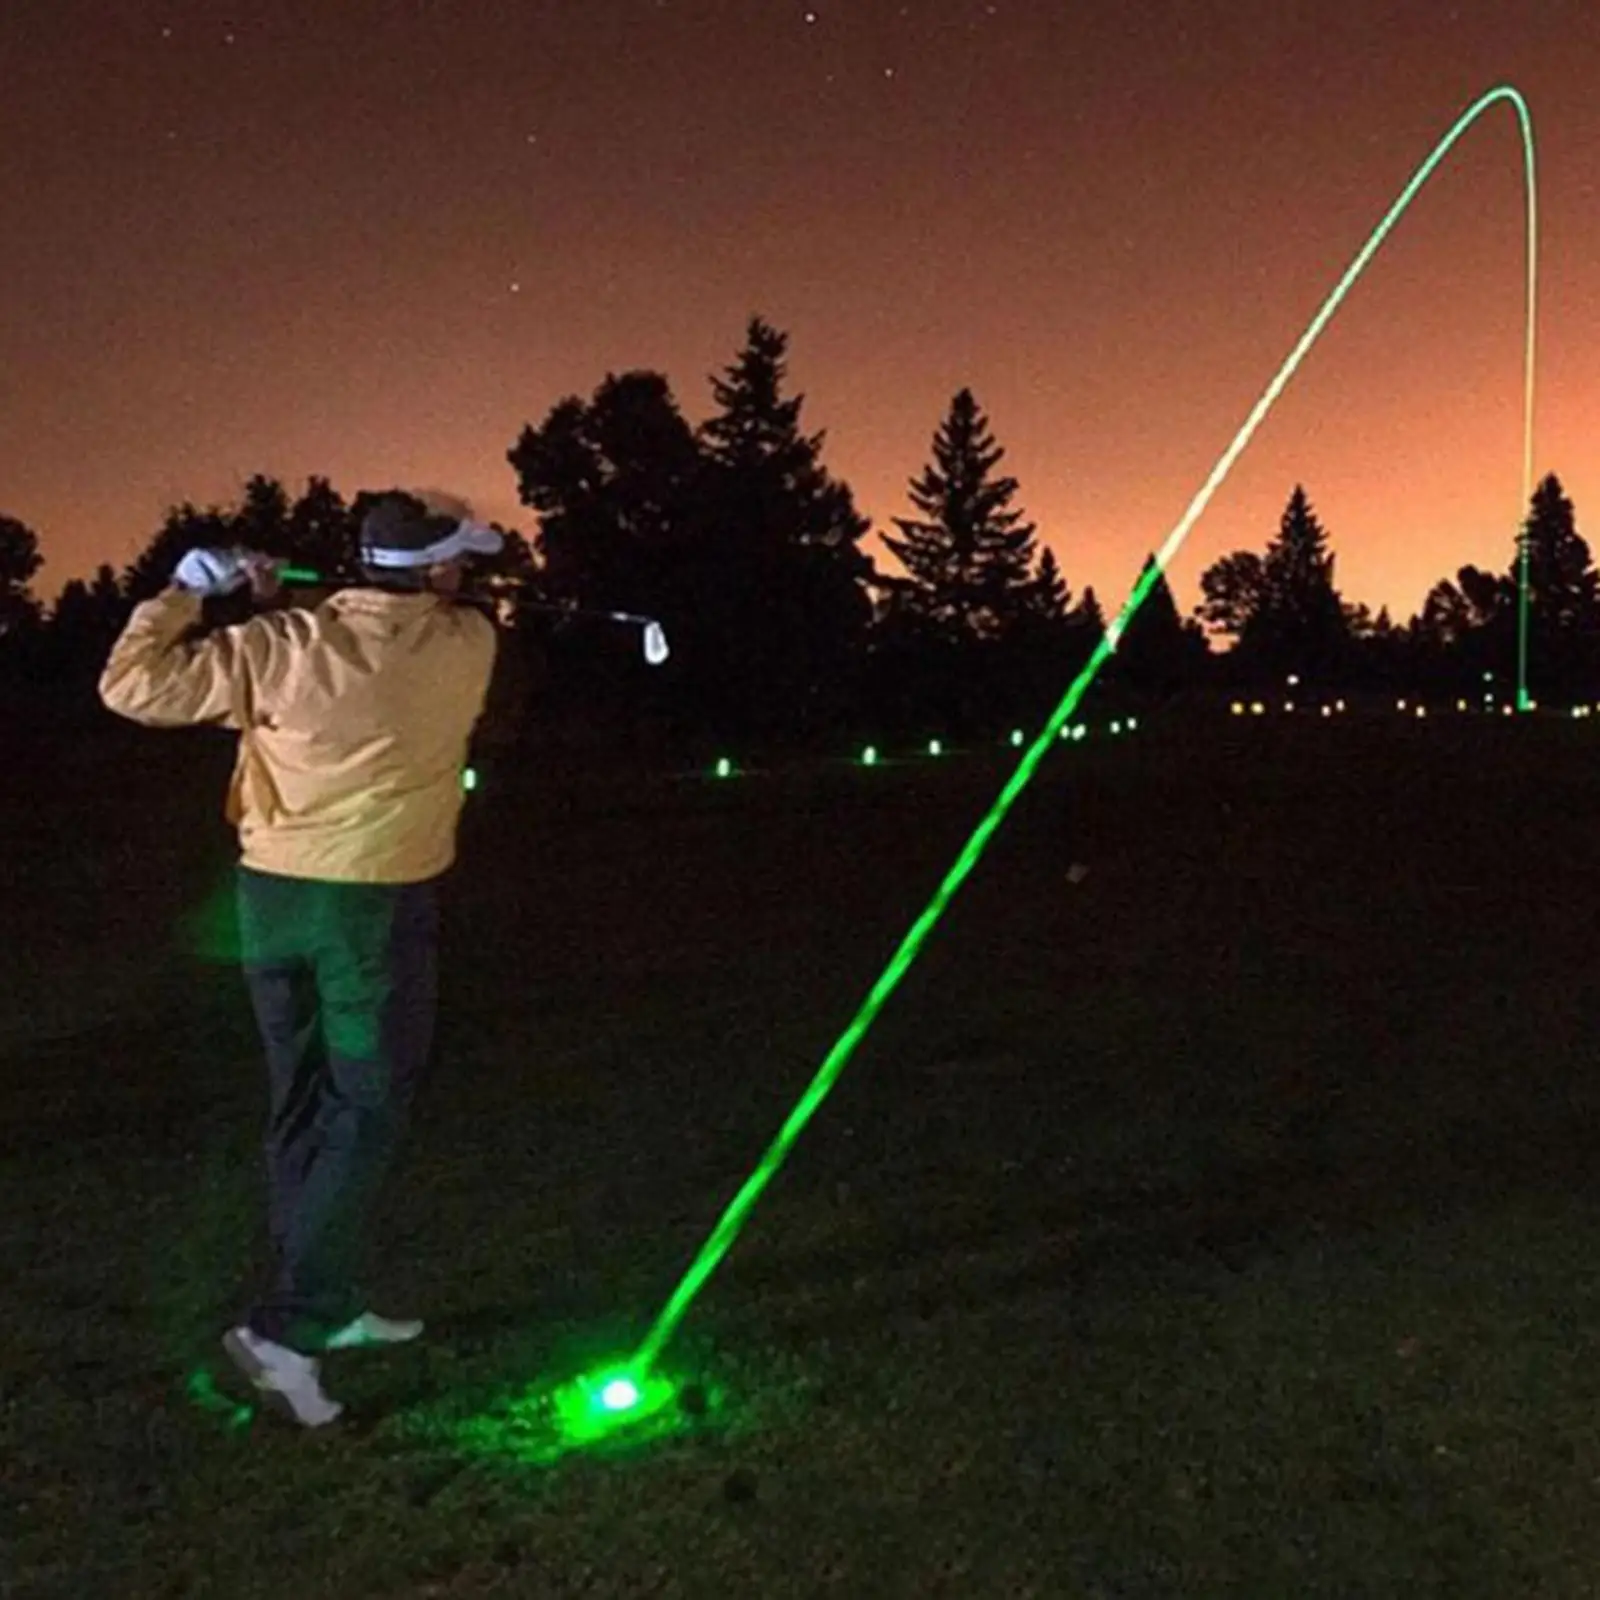 

Светящийся ночной мяч для гольфа, светящийся в темноте, долговечный, без светодиодов внутри для тренировок, ударов по гольфу, подарок, оборудование для гольфа